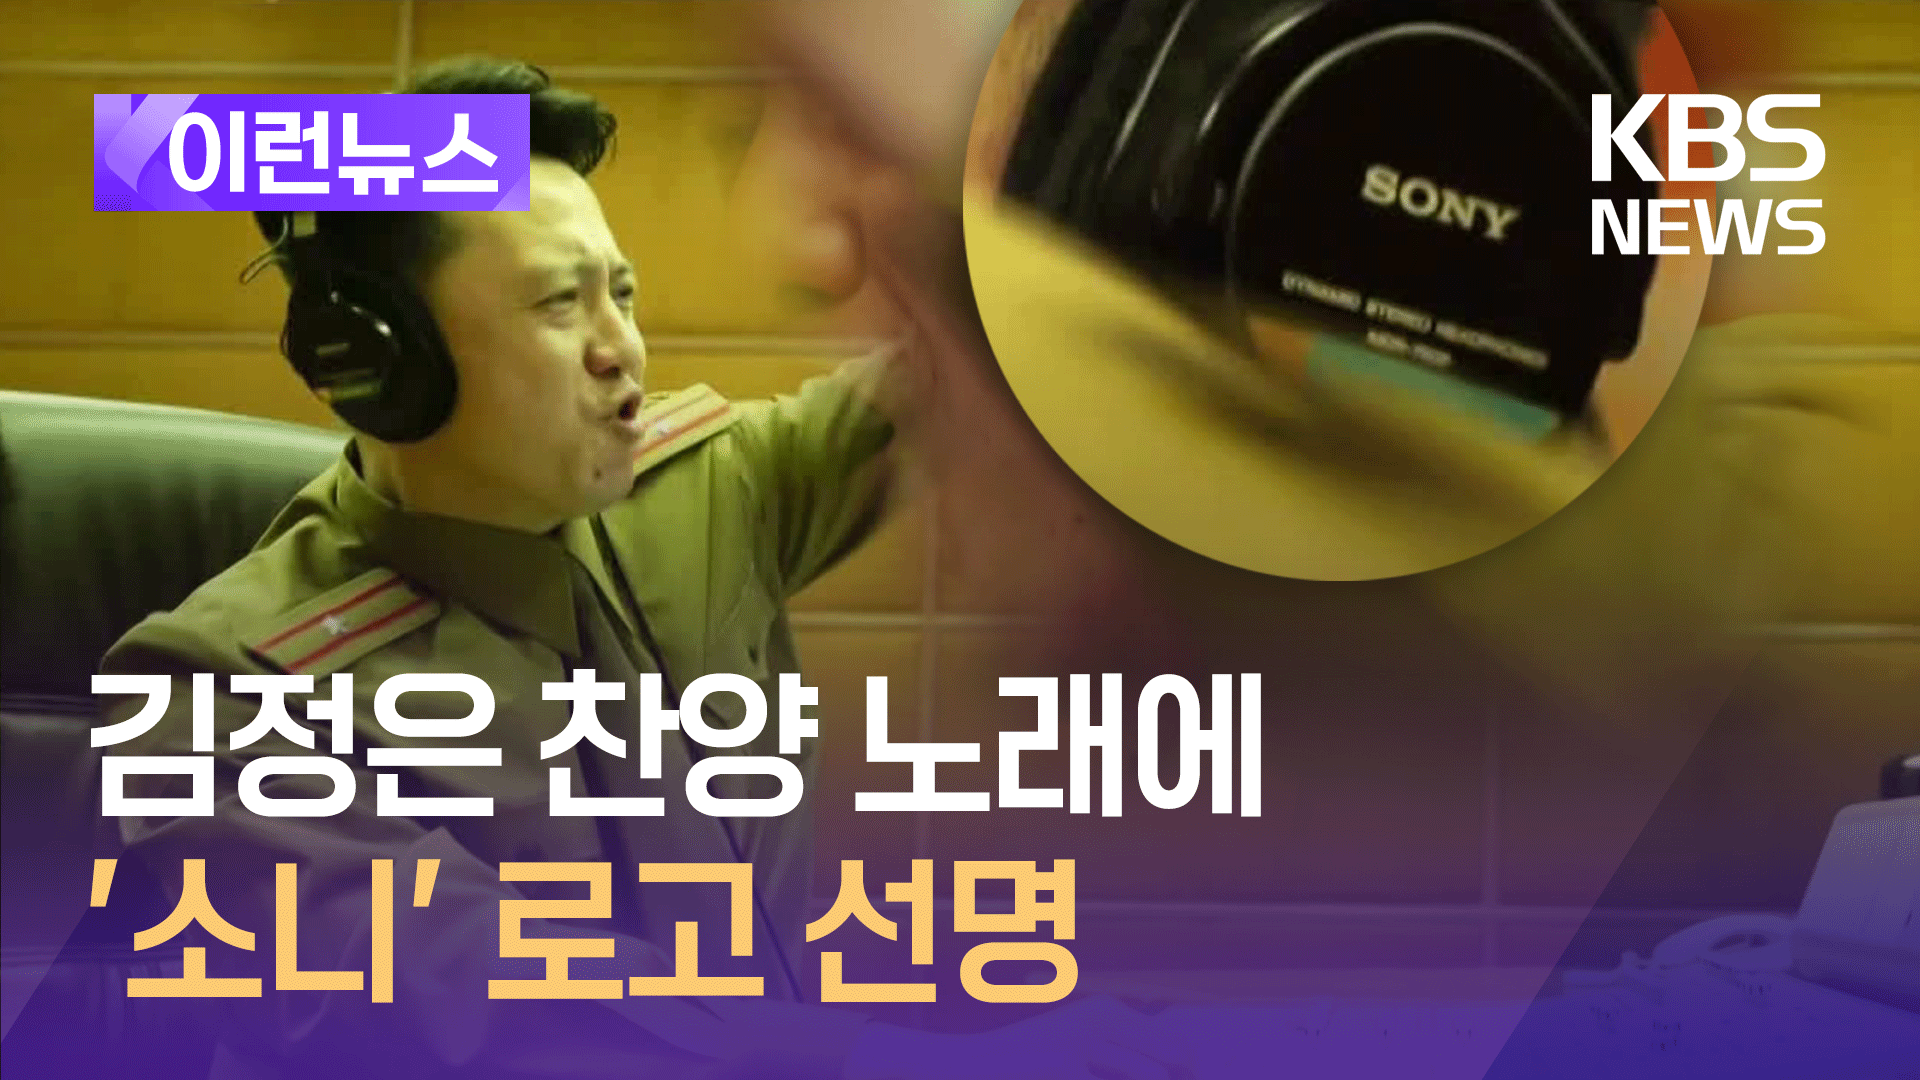 북한 김정은 찬양 뮤비에 일본 ‘소니’ 제품이?